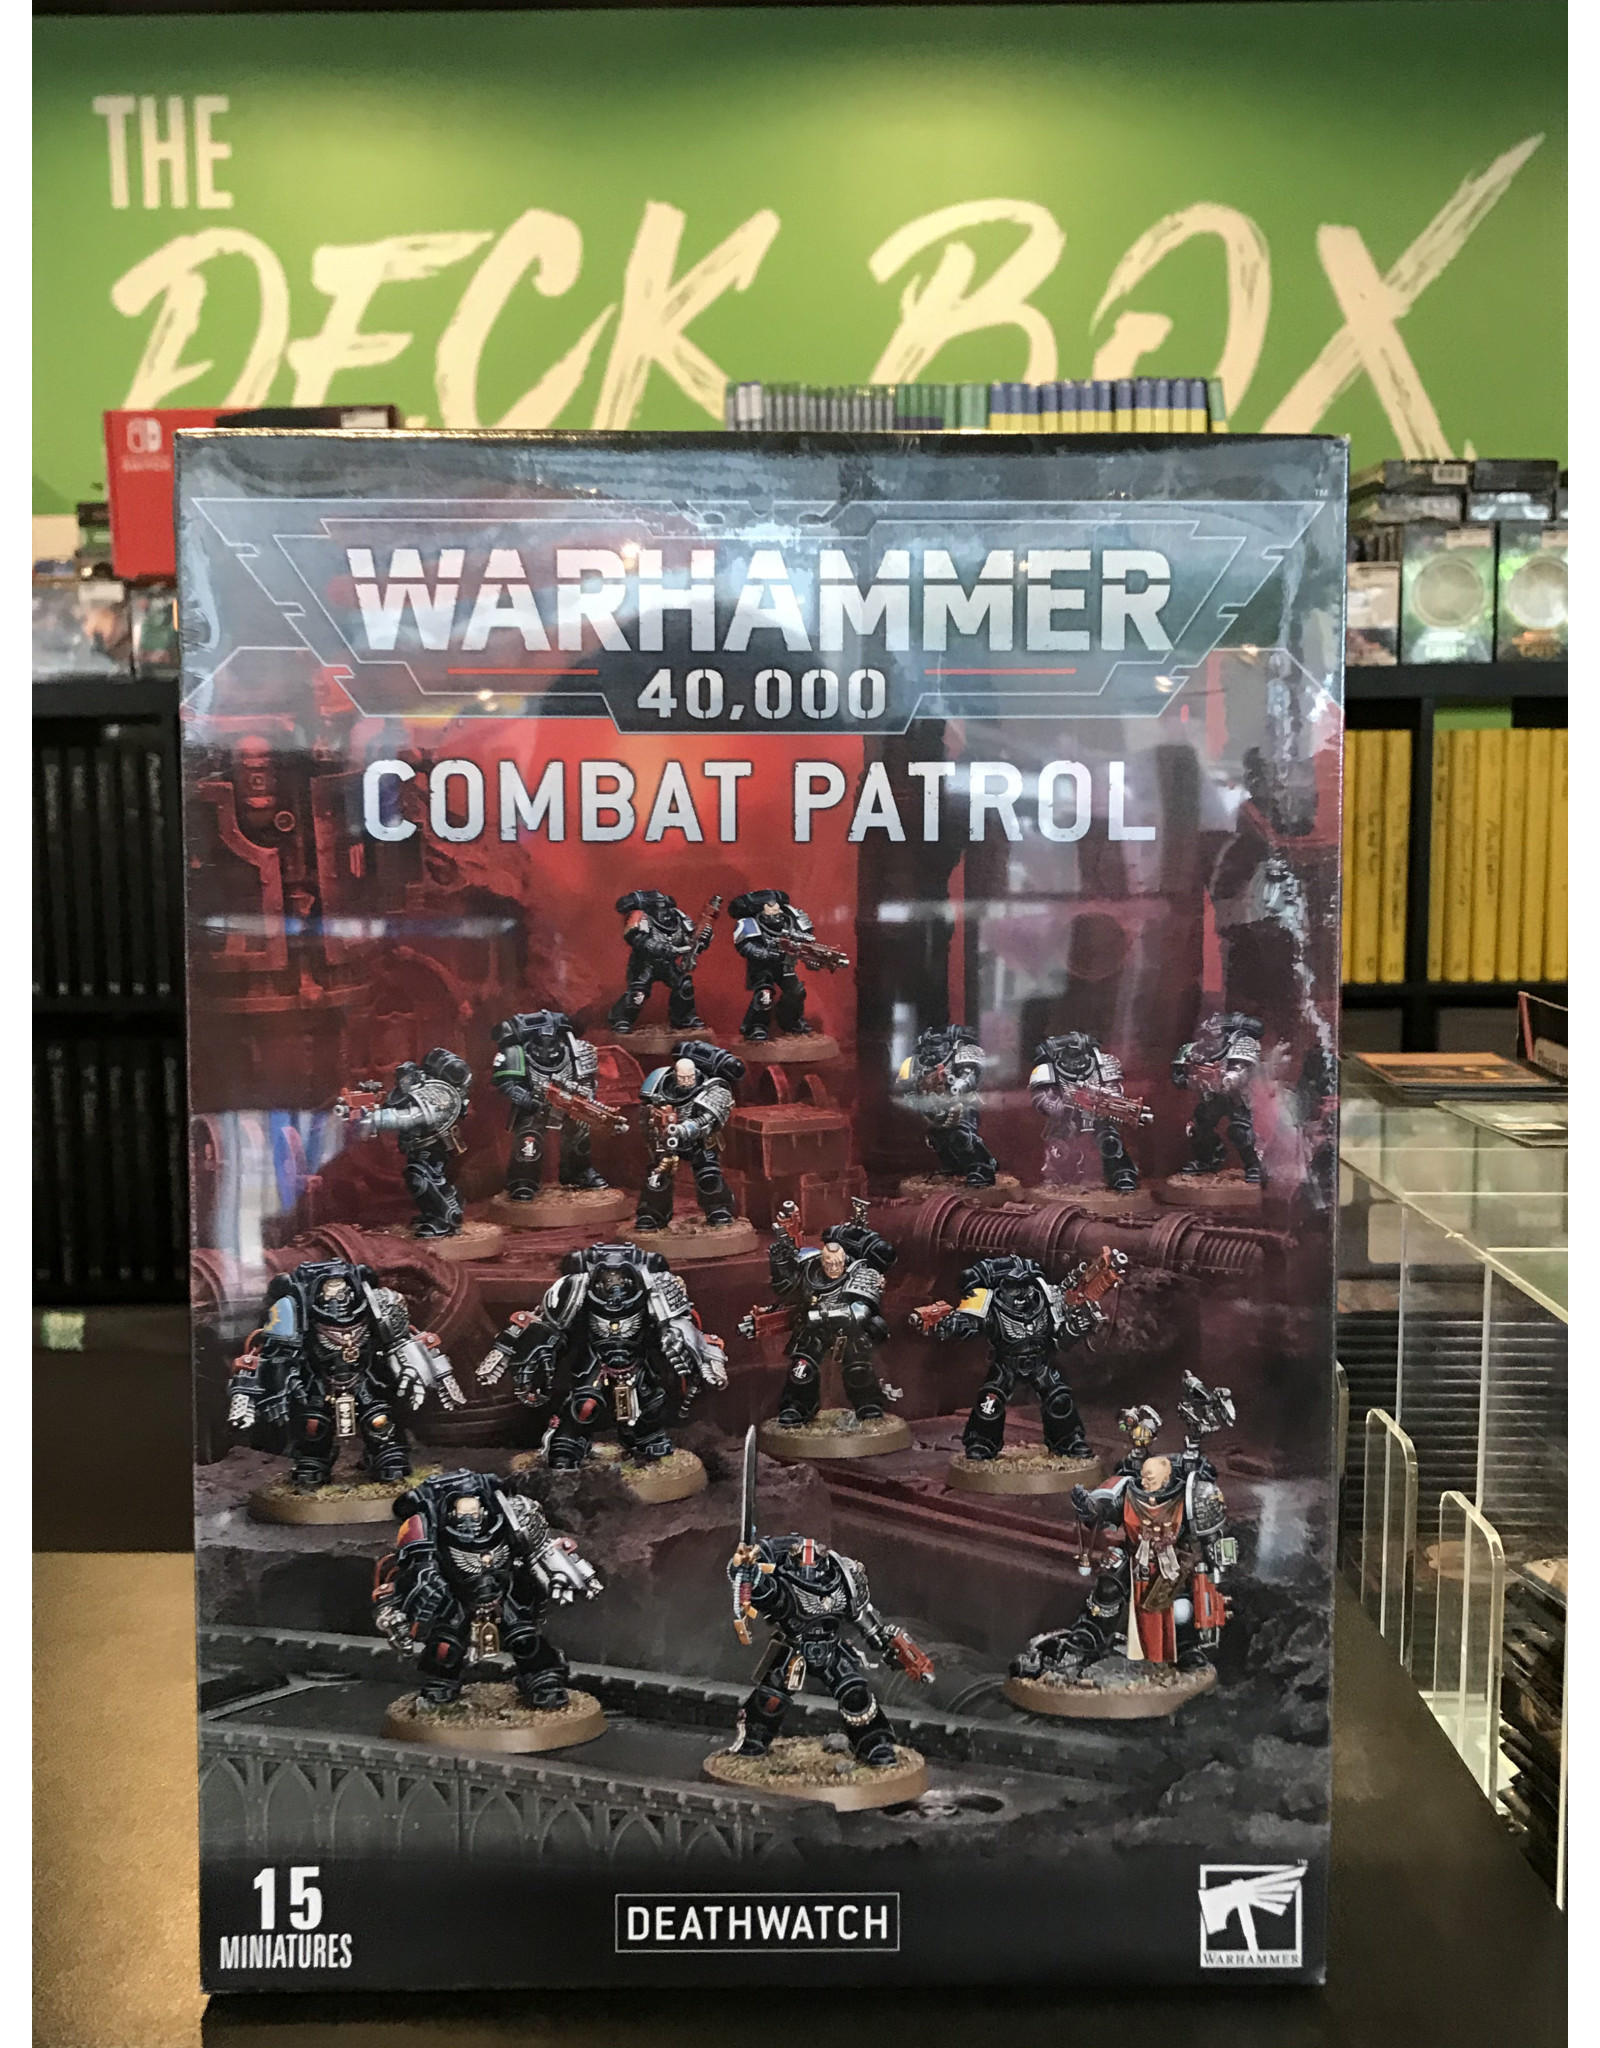 Warhammer 40K COMBAT PATROL: DEATHWATCH